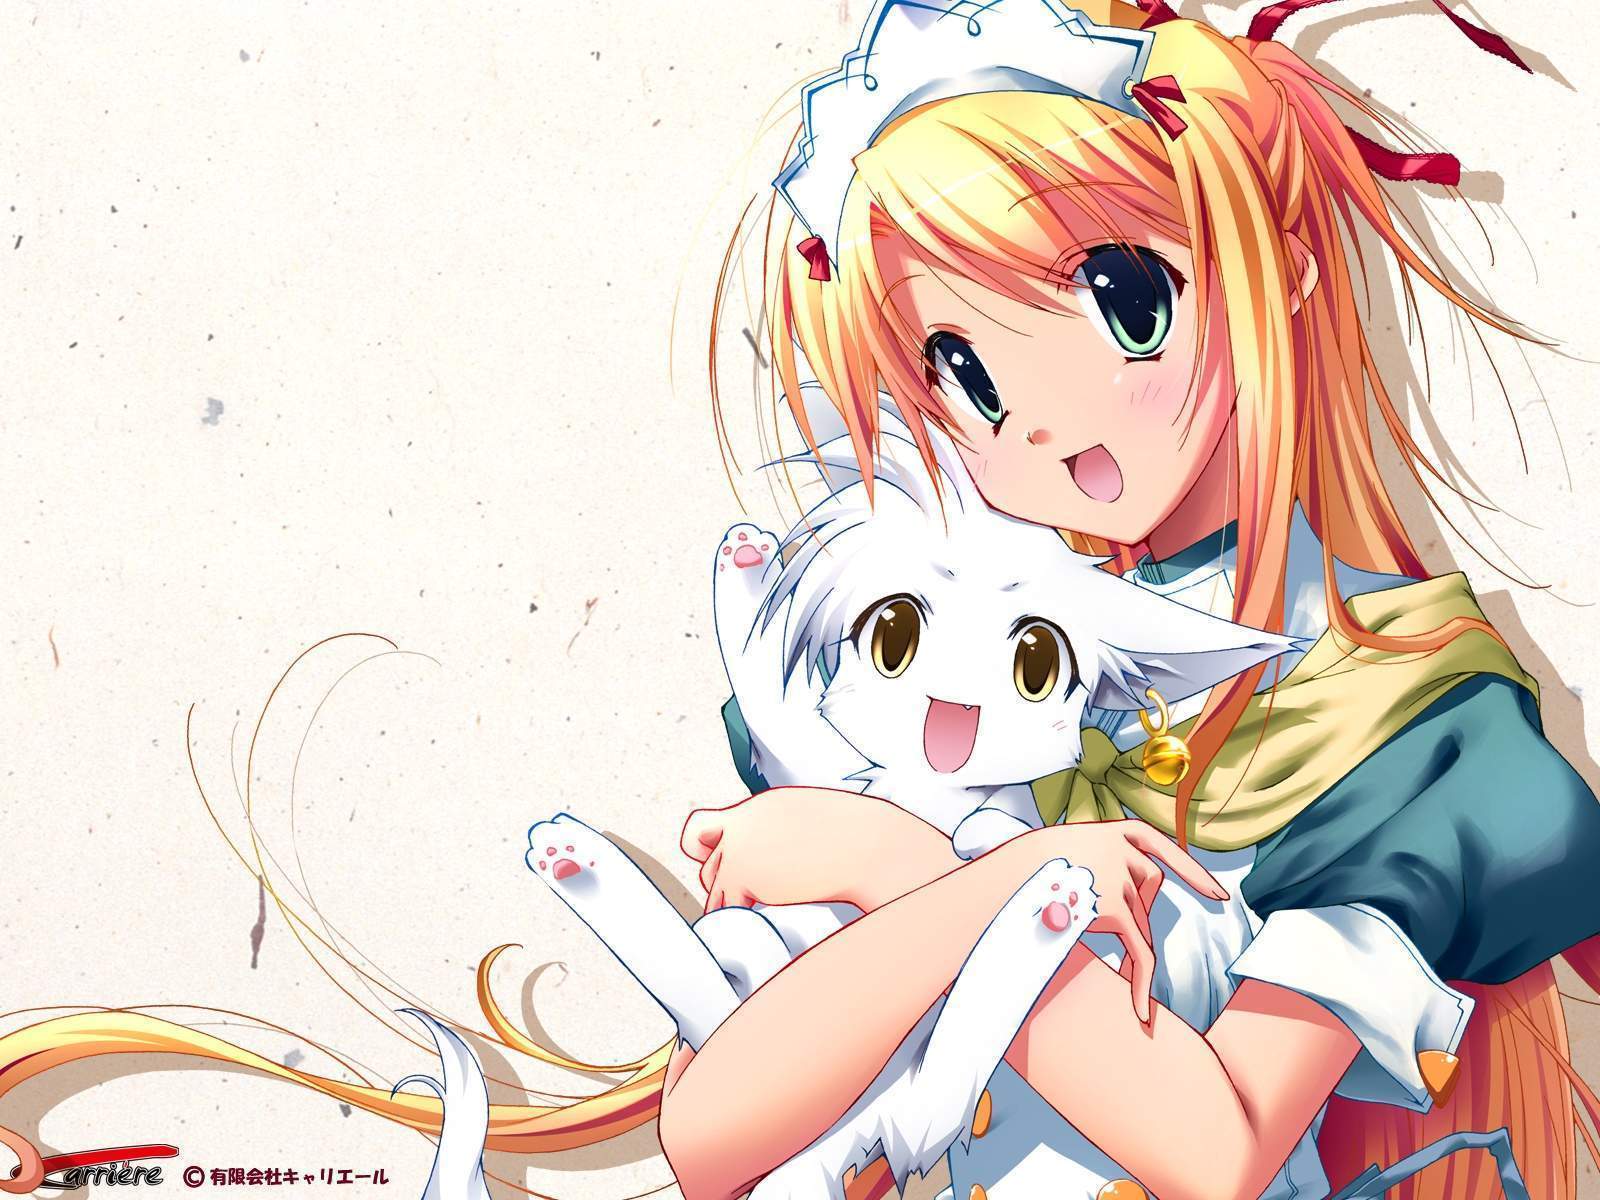 anime girl with cat/kitten - Star Light Wallpaper (24661414) - Fanpop